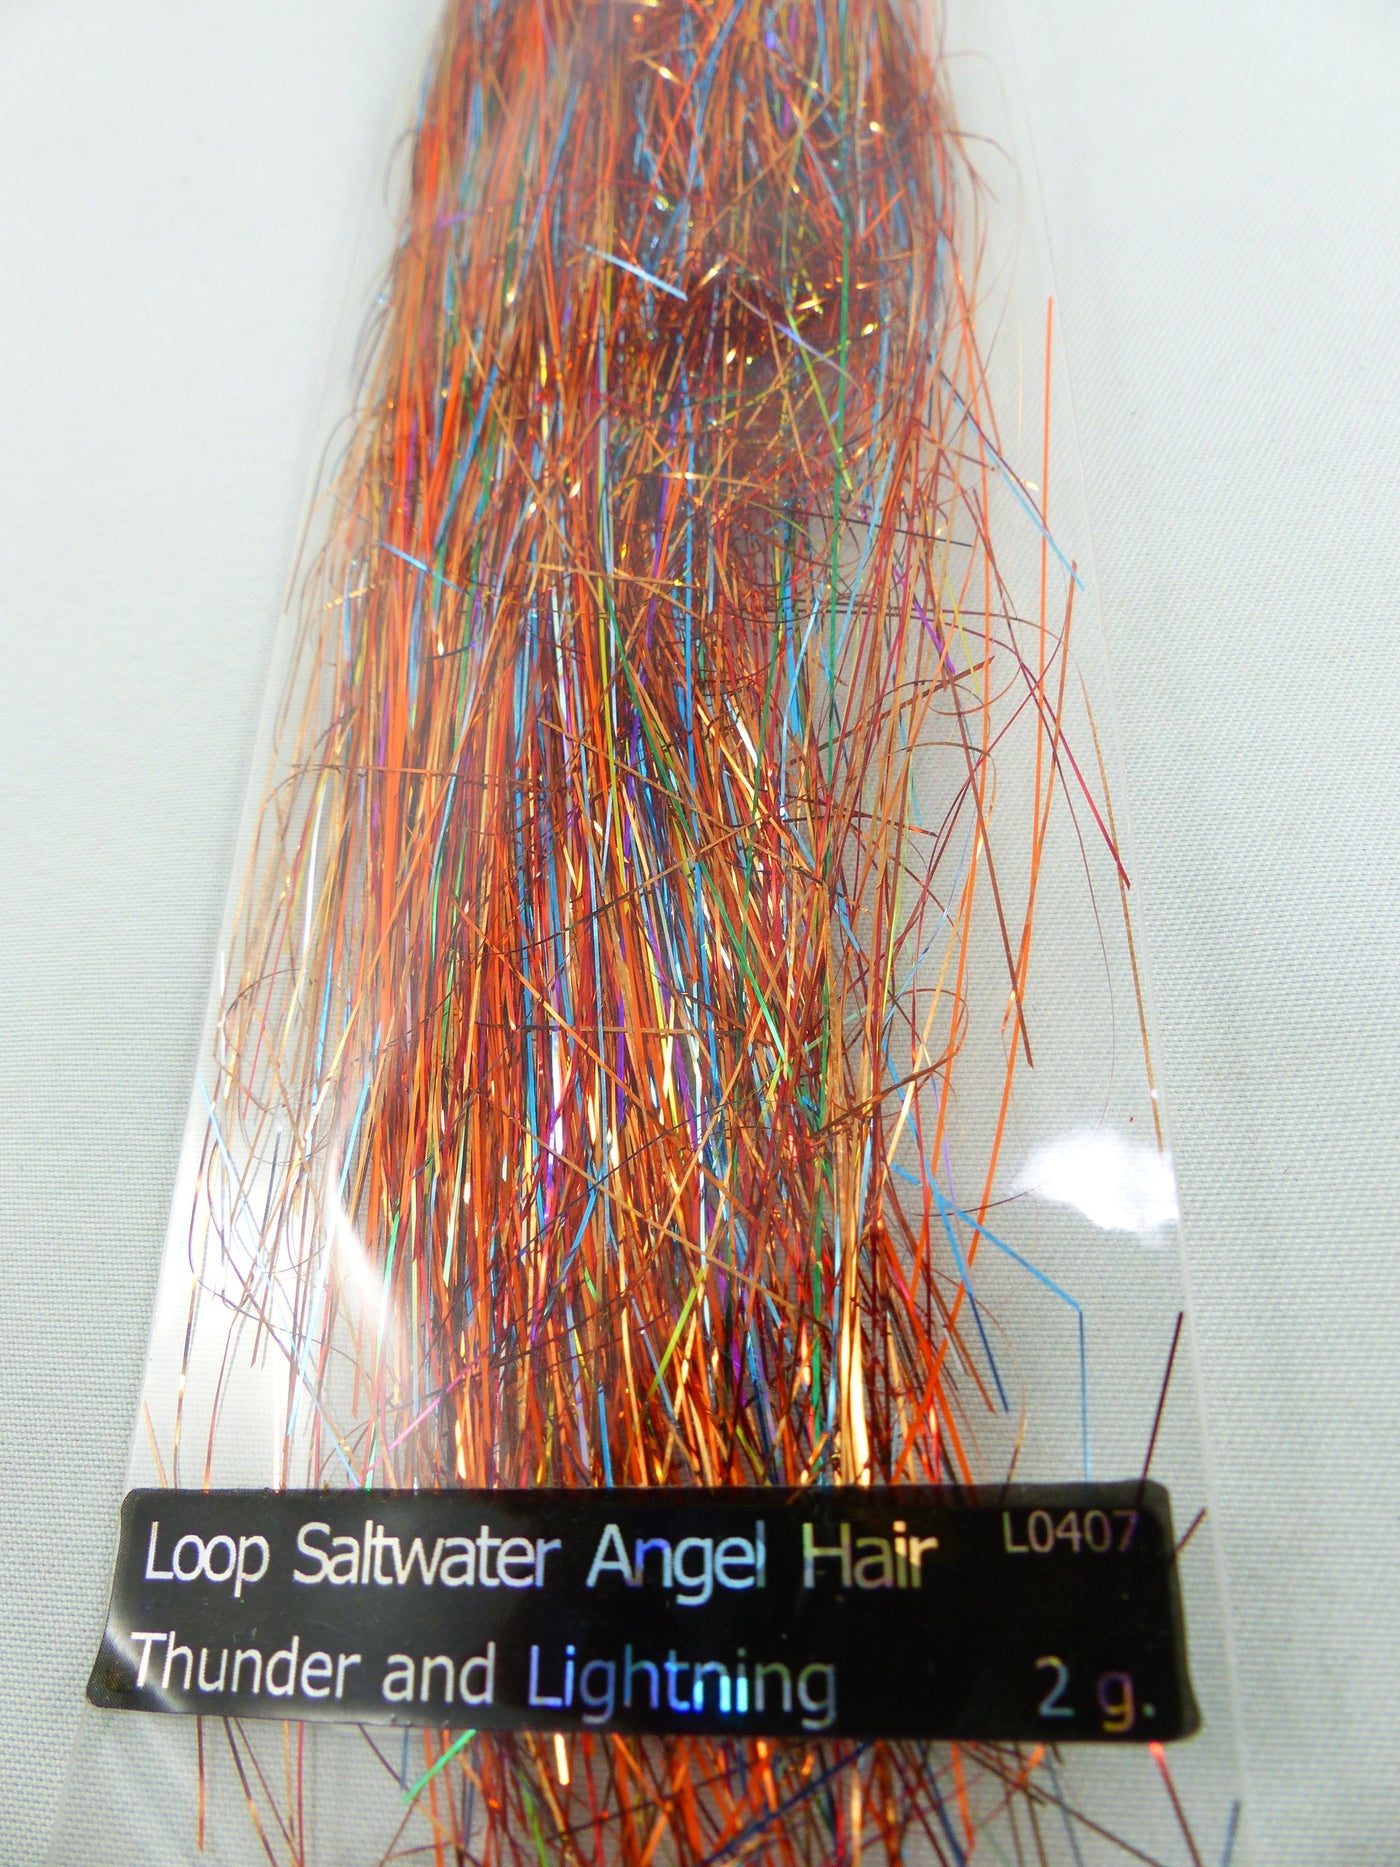 LOOP SALTWATER ANGEL HAIR